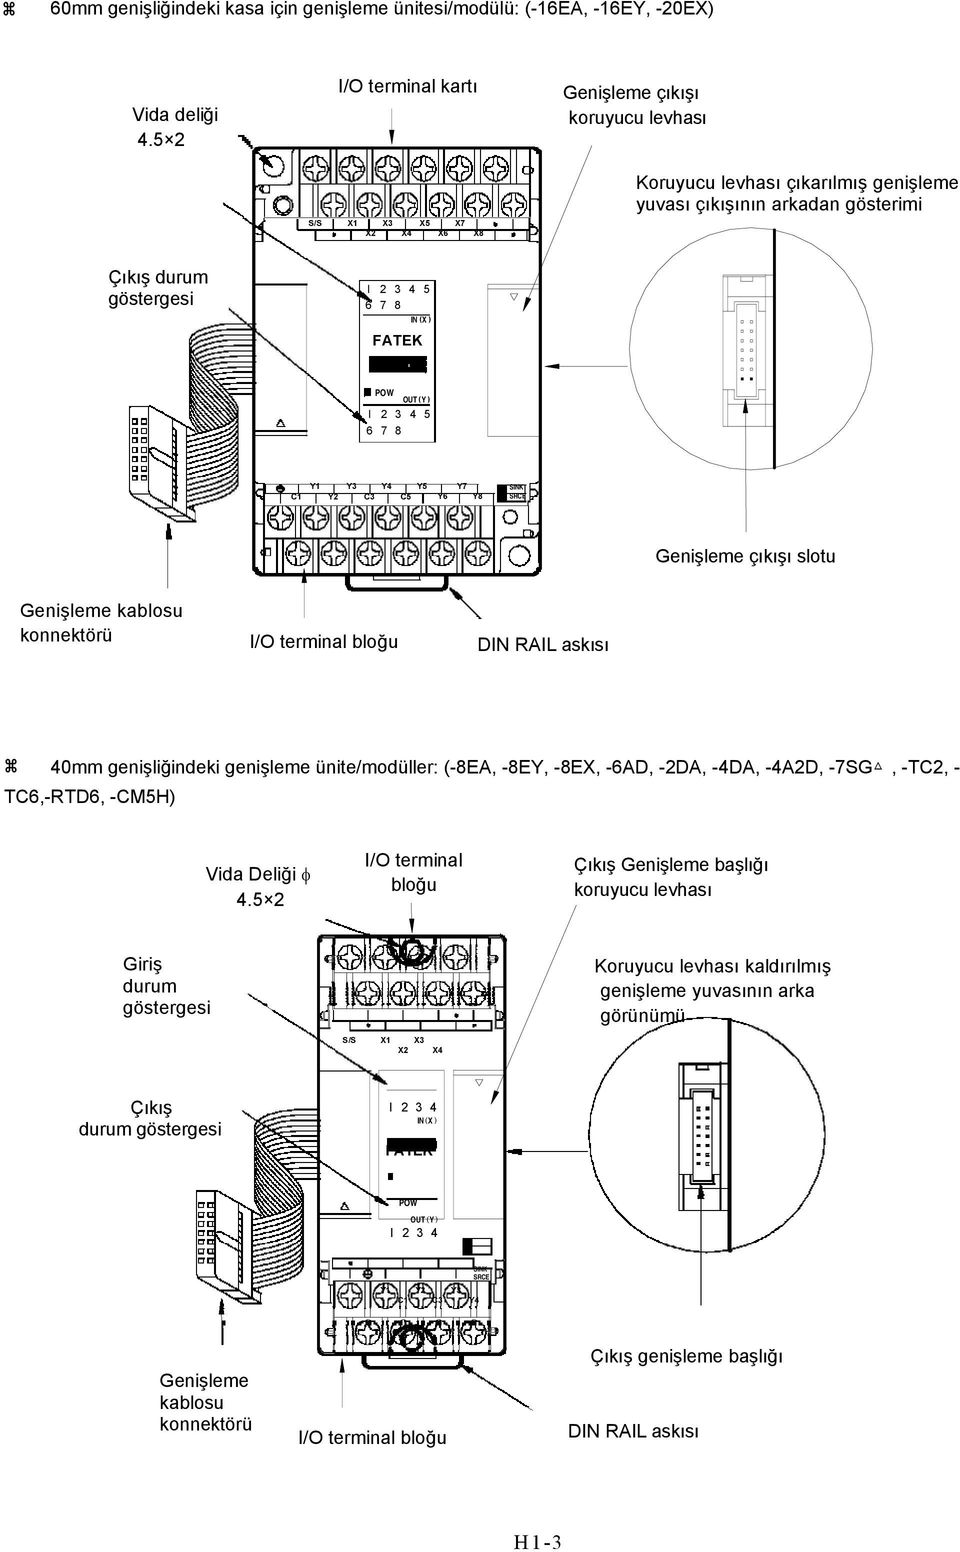 ( X ) FATEK POW OUT ( Y ) I 2 3 4 5 6 7 8 C1 Y1 Y2 Y3 Y4 Y5 C3 C5 Y6 Y7 Y8 SINK SRCE Genişleme çıkışı slotu Genişleme kablosu konnektörü I/O terminal bloğu DIN RAIL askısı 40mm genişliğindeki